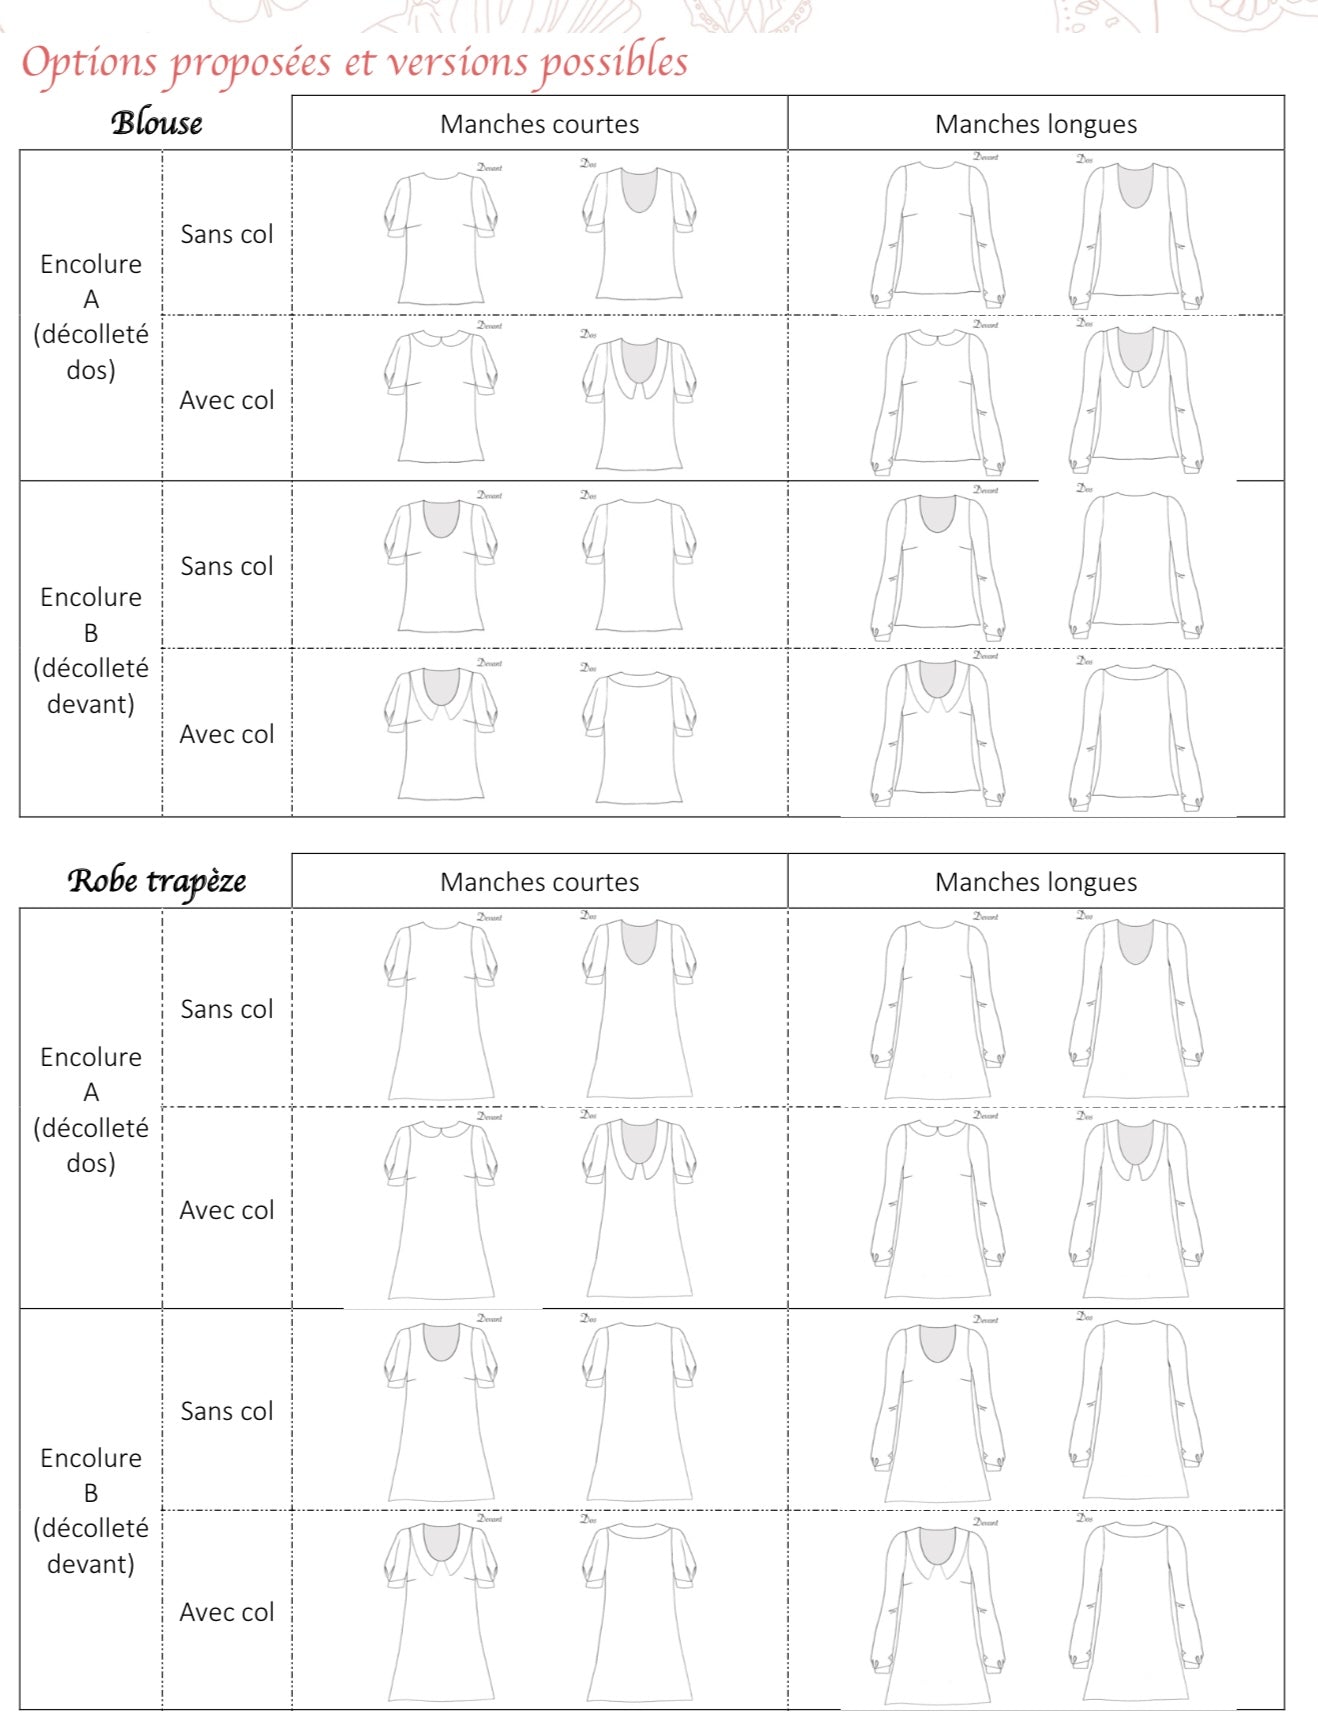 Blouse/robe Cho Femme 34-50 (Patron de couture PDF)